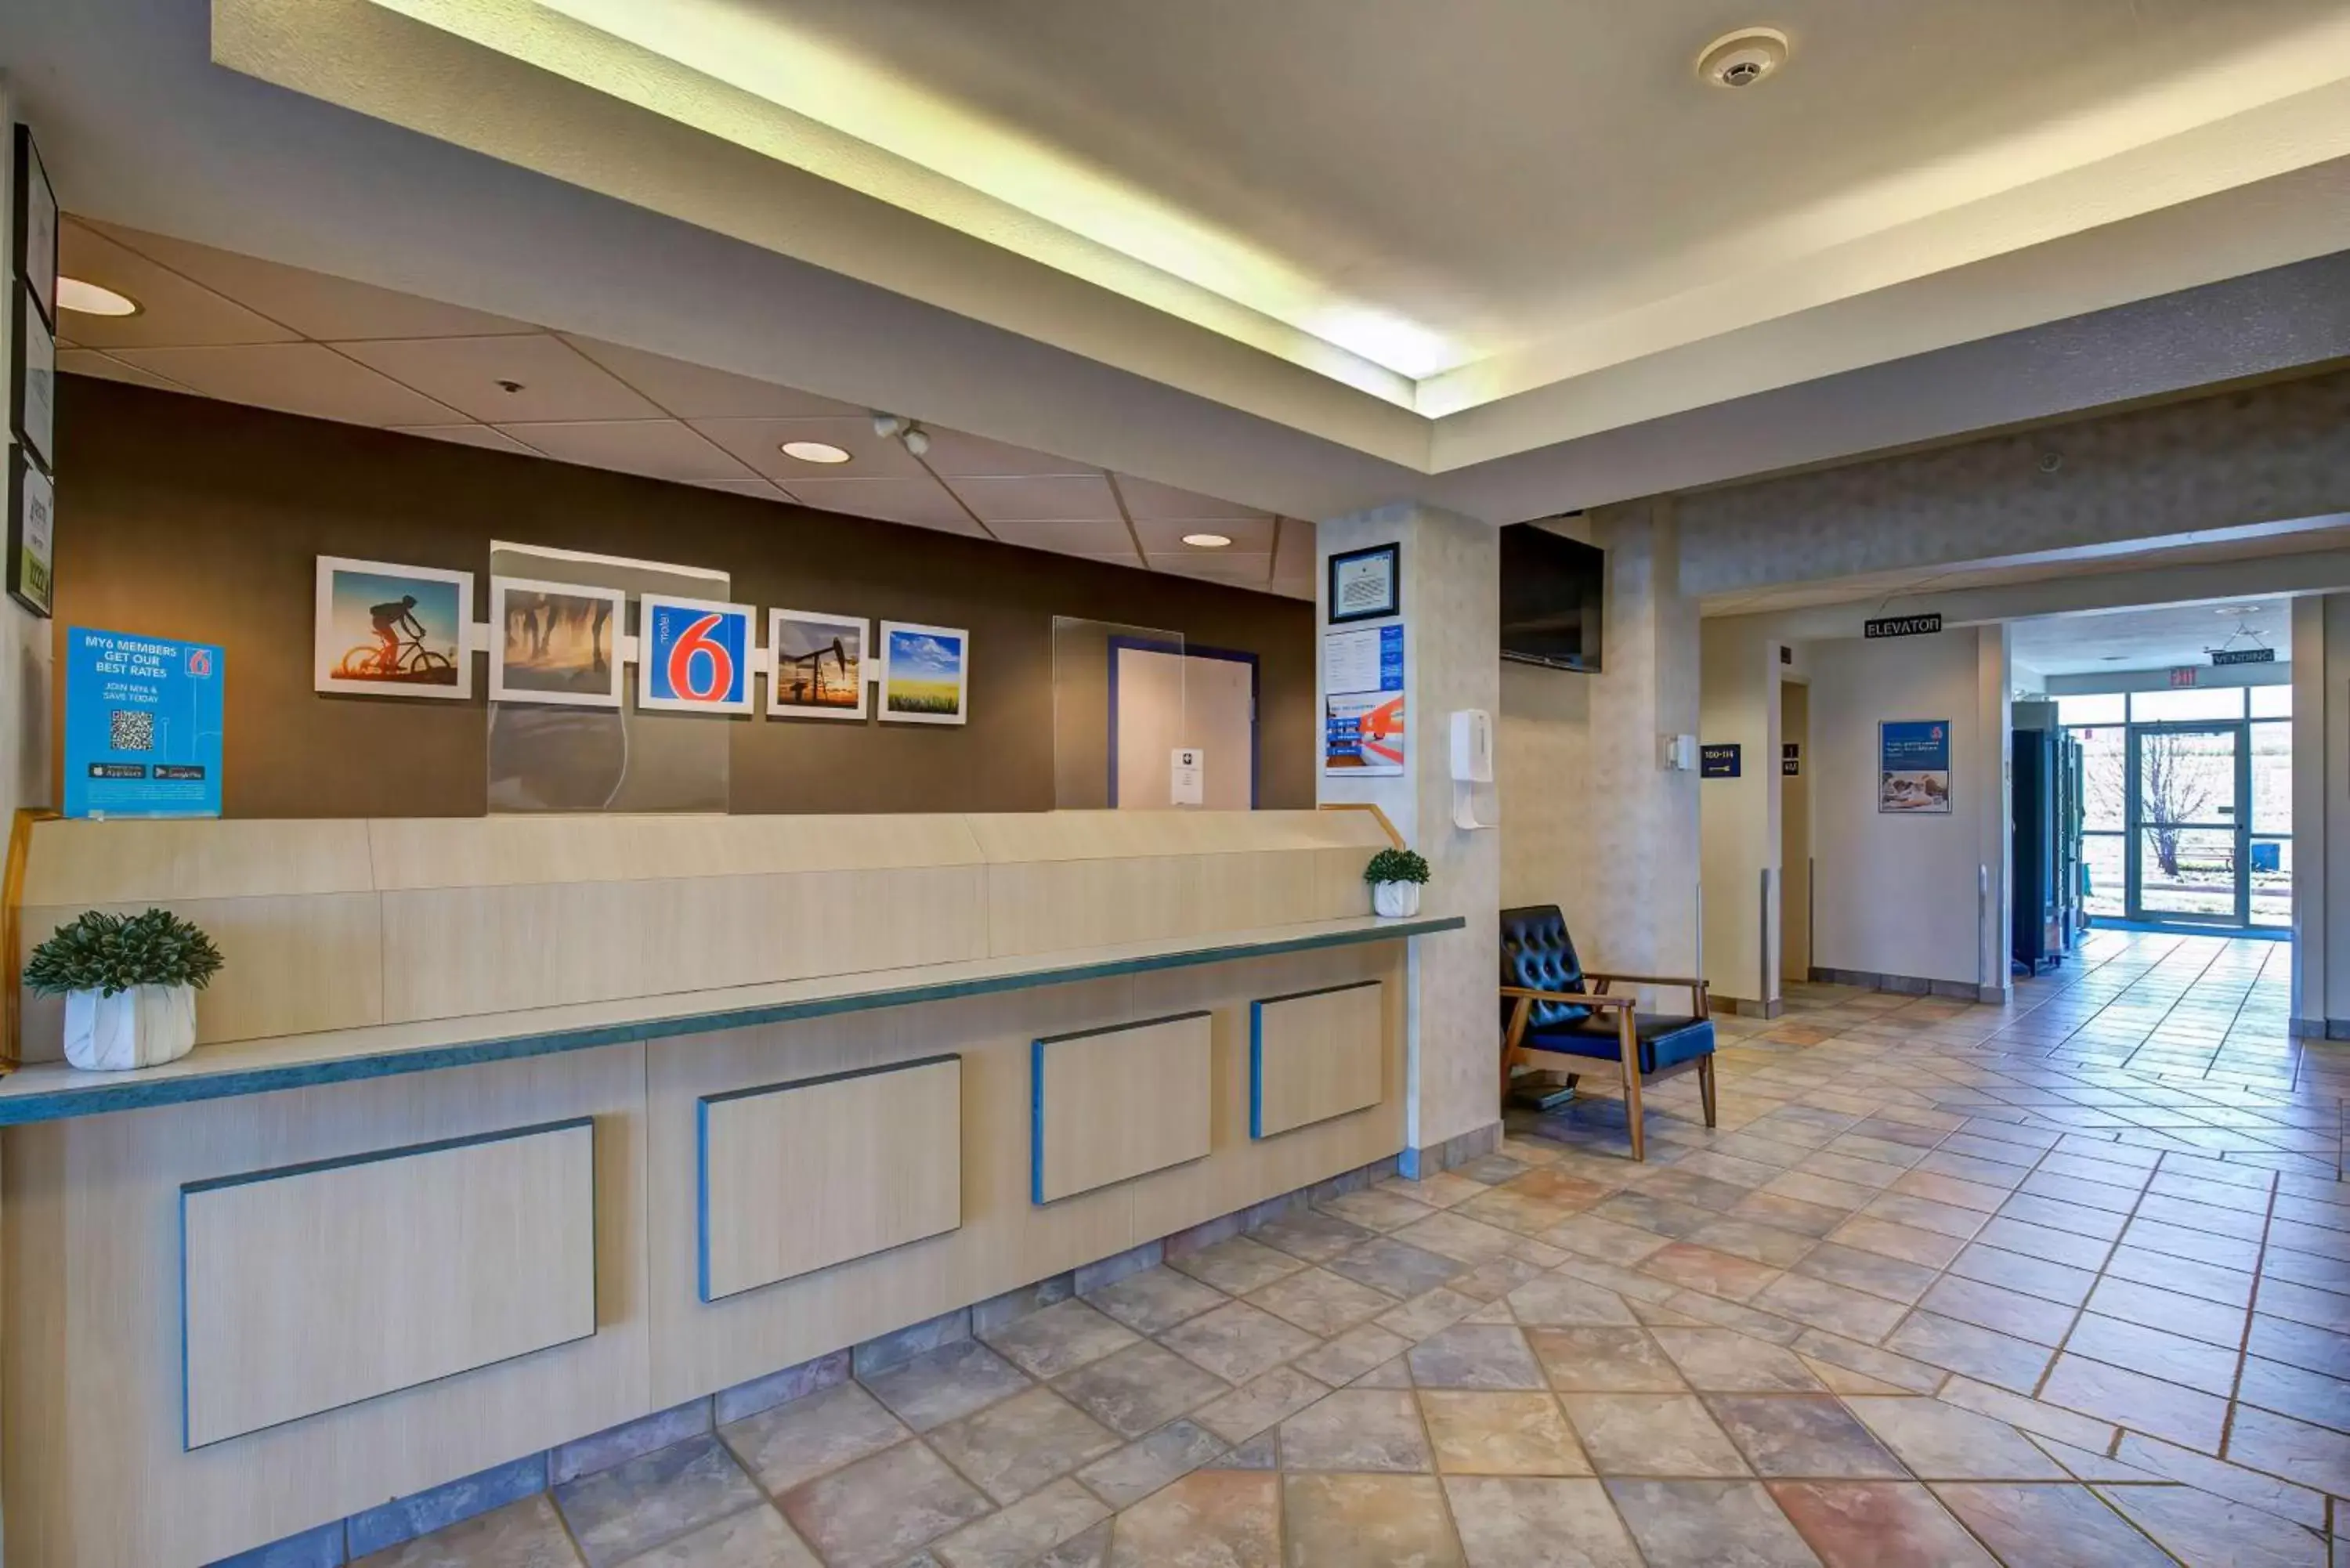 Lobby or reception, Lobby/Reception in Motel 6-Grande Prairie, AB